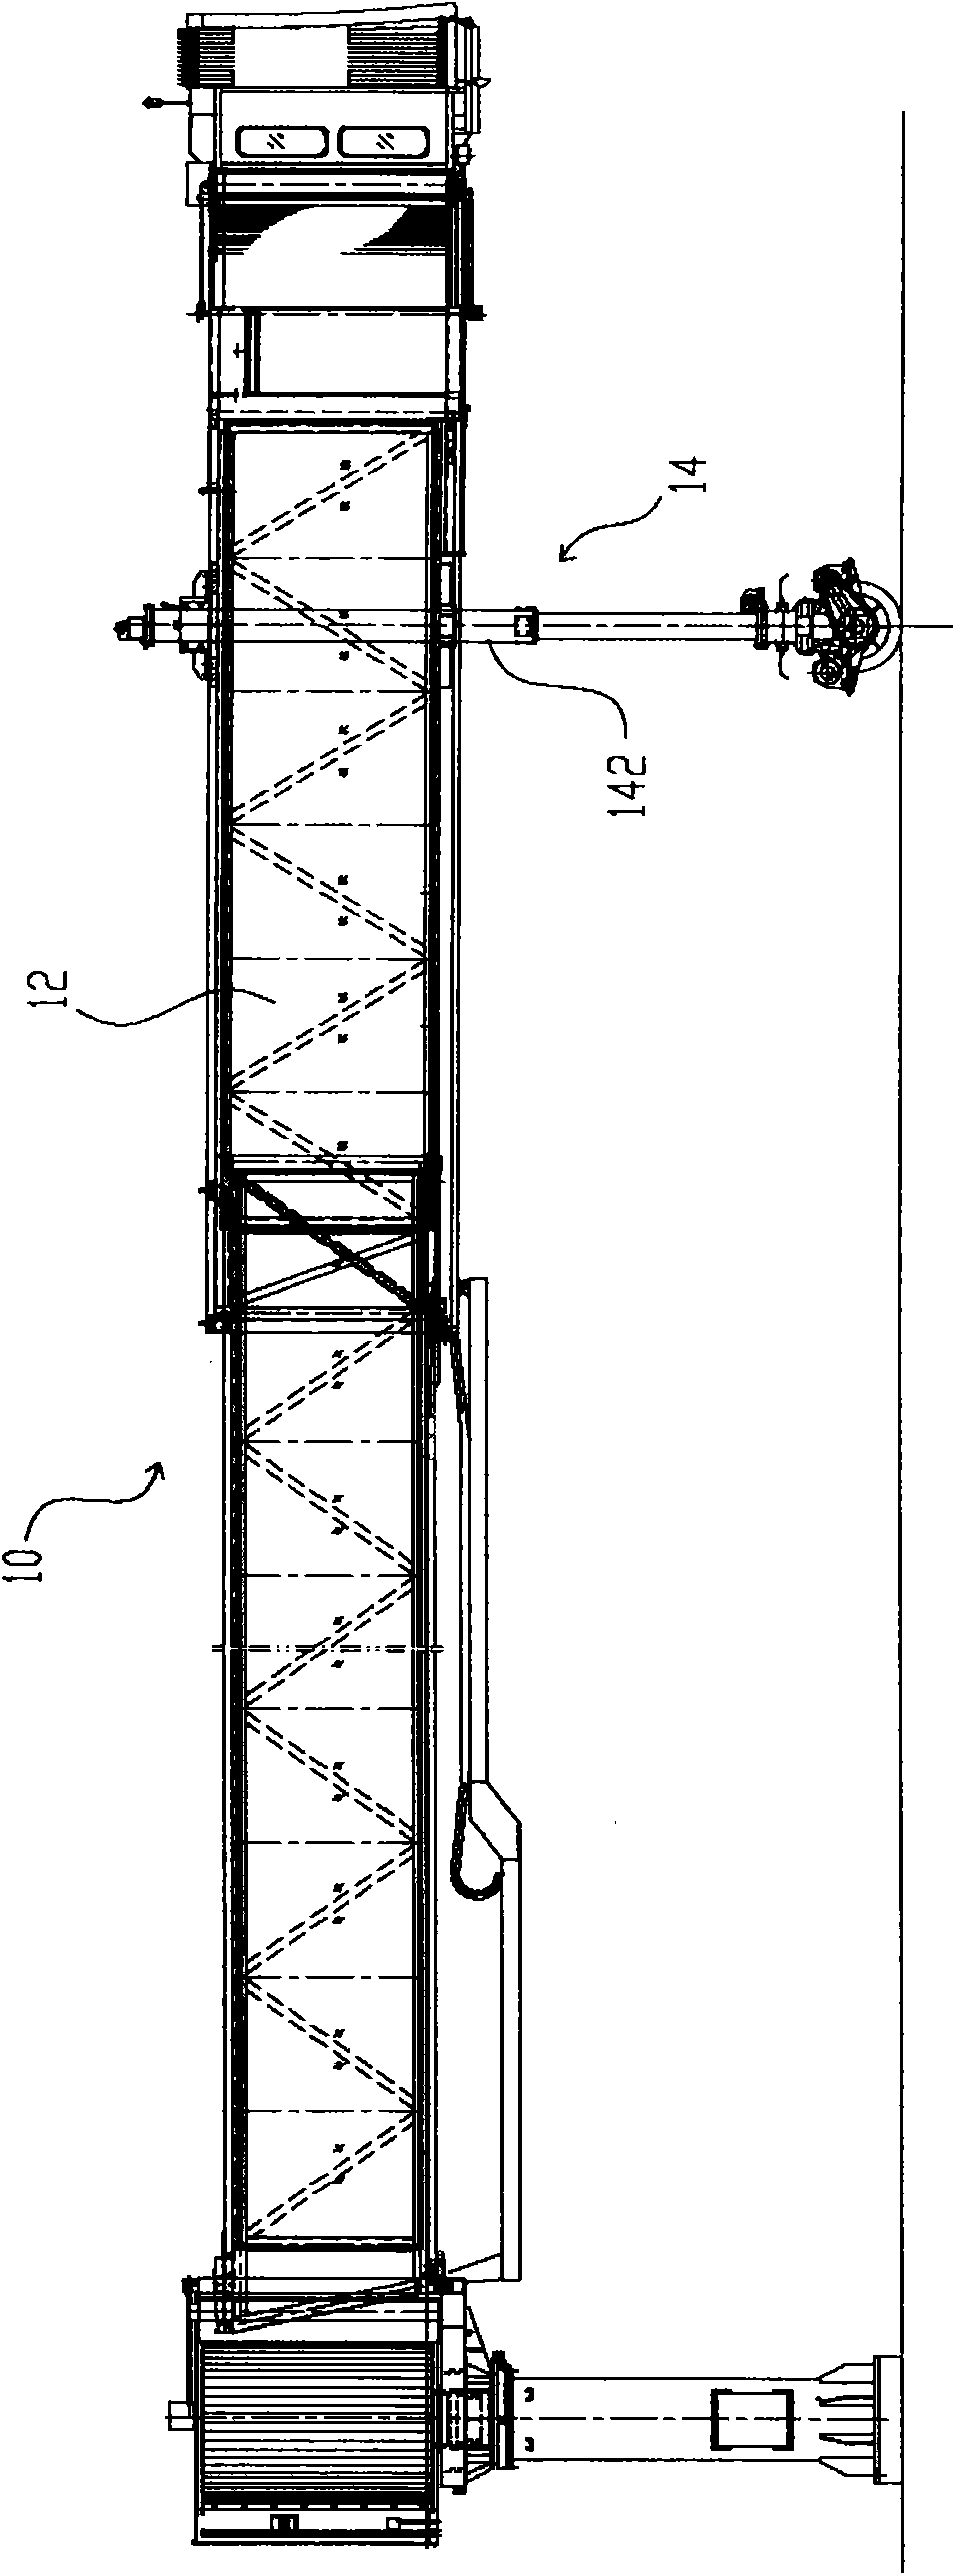 Aerobridge lifting device and method for adjusting same